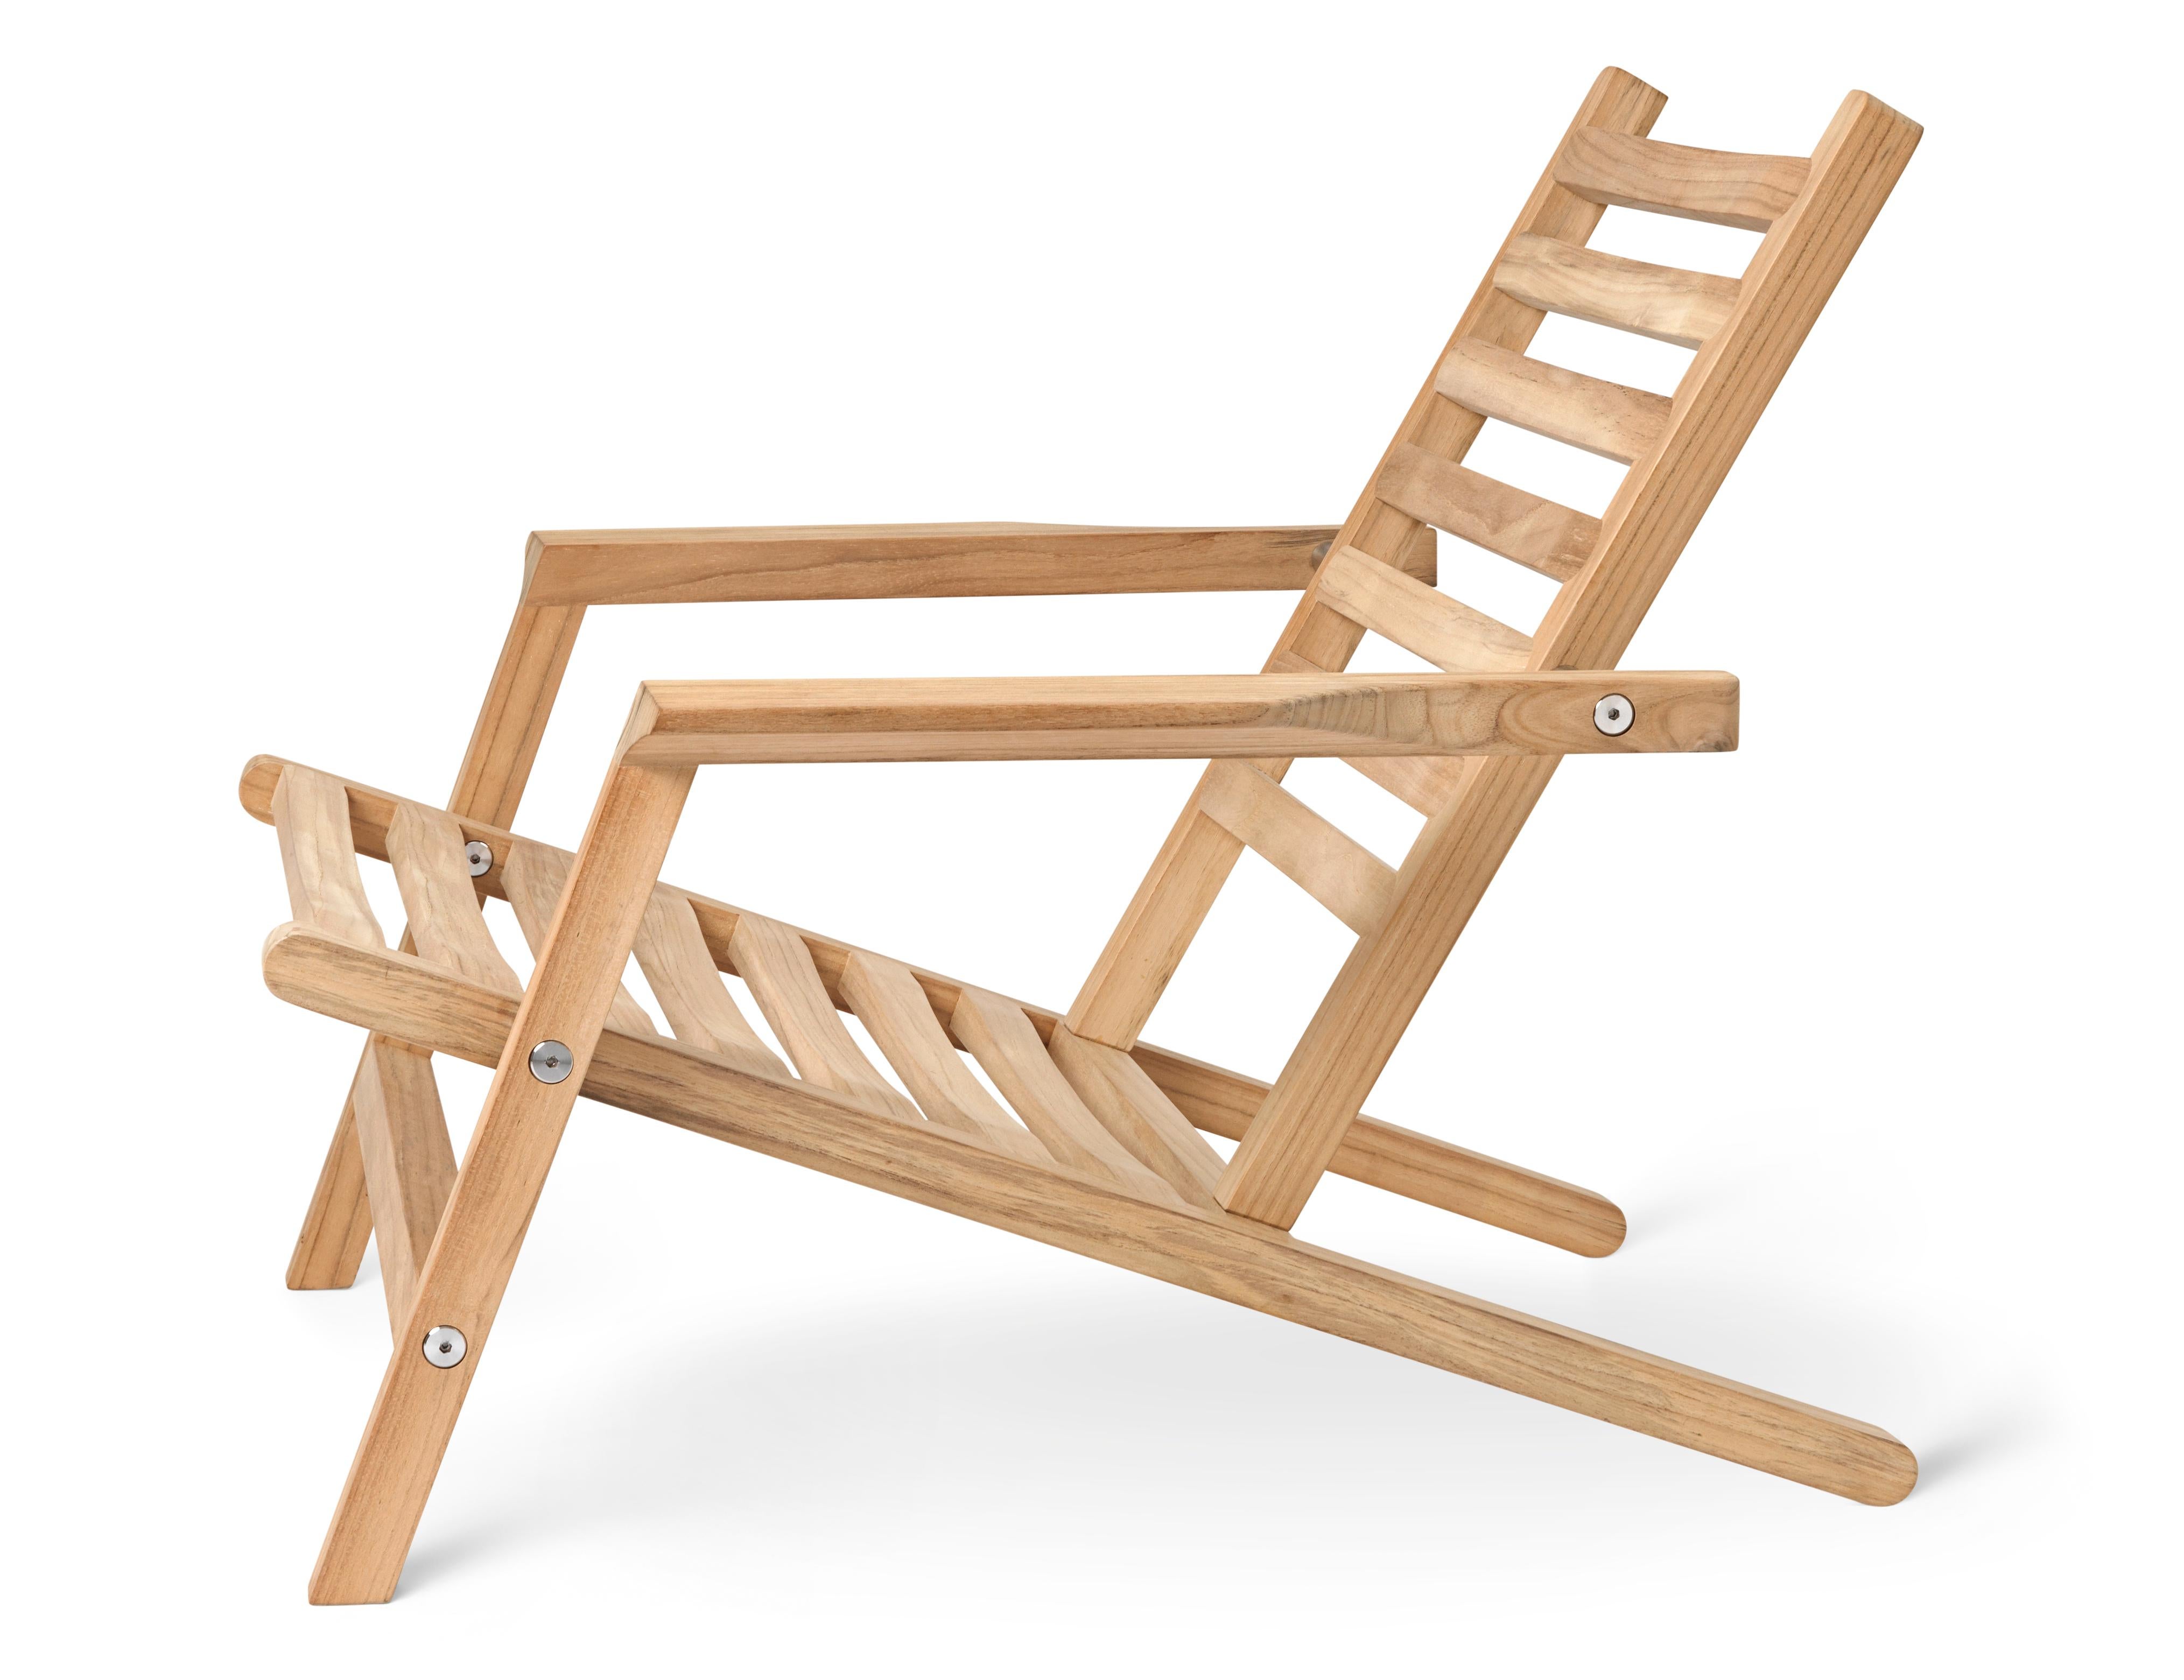 Der bequeme Outdoor Deck Stuhl ist Teil der AH Outdoor Serie, die von Alfred Homann im Jahr 2022 entworfen wurde. Wie die anderen Außenmöbel der Serie zeichnet sich der Liegestuhl durch strenge Linien aus, die elegant mit weichen, abgerundeten